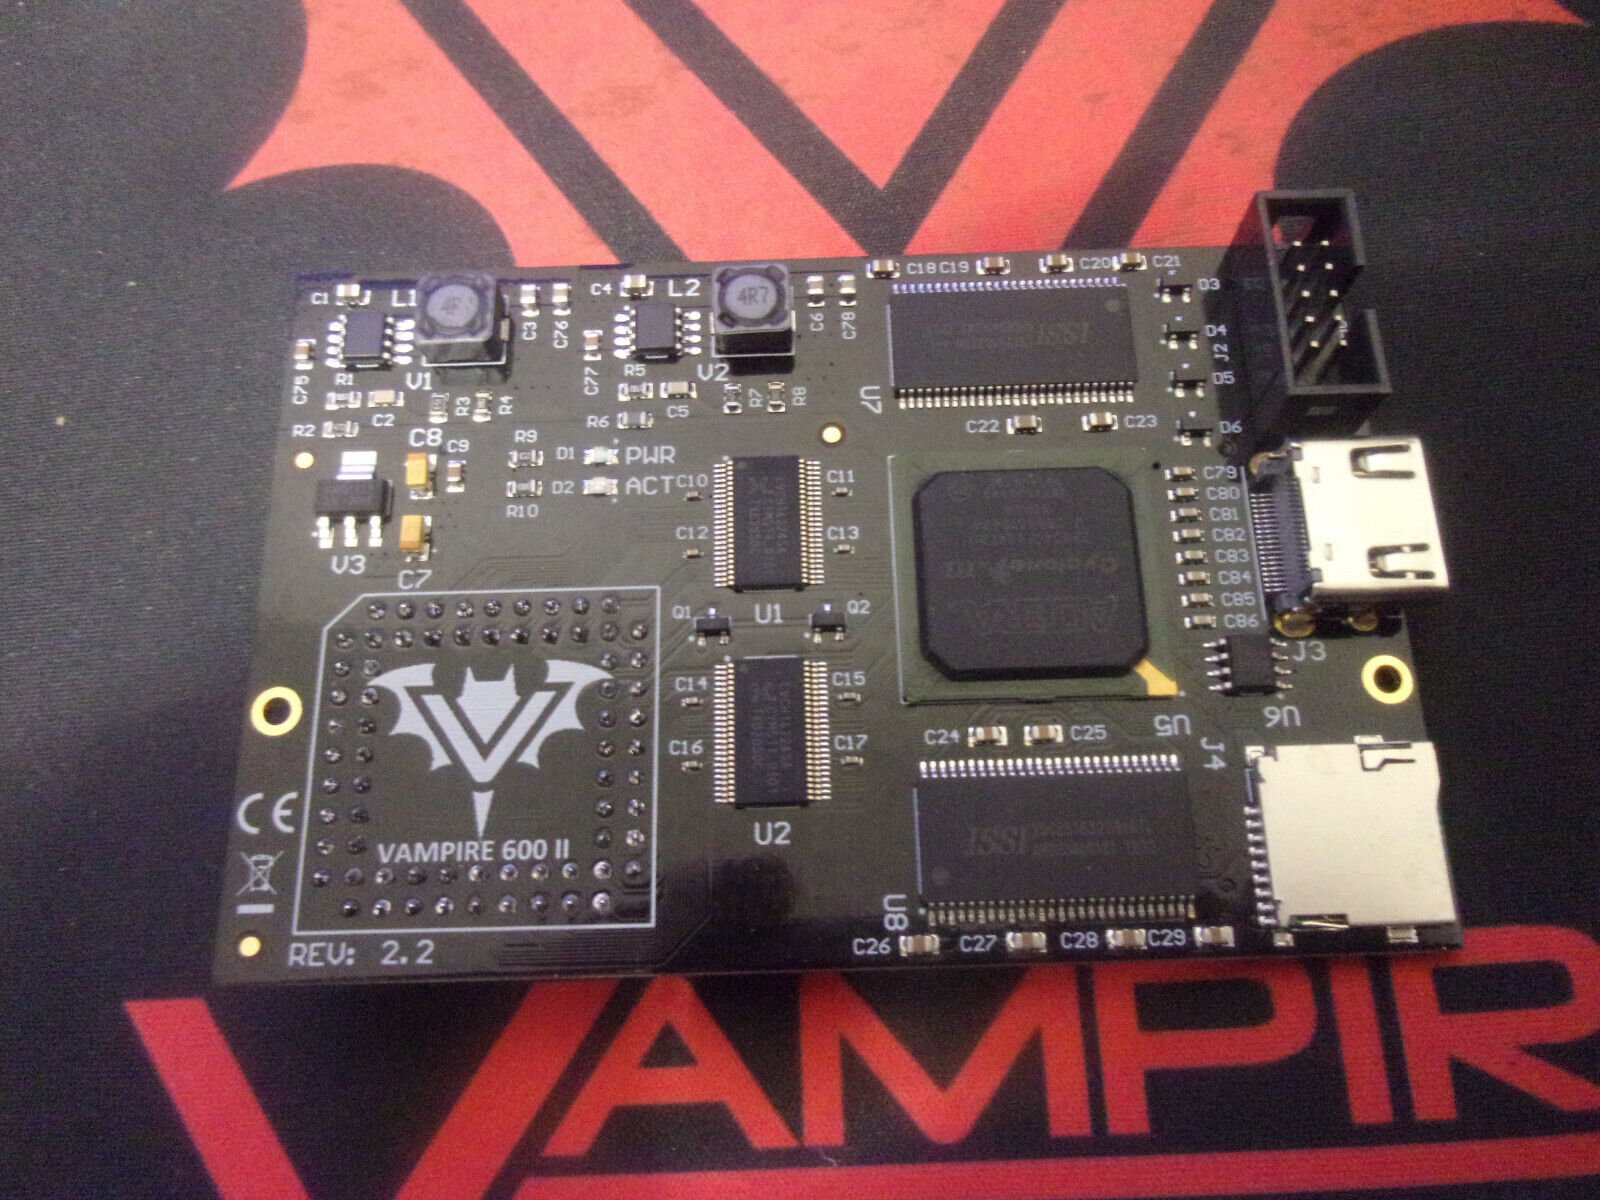 Vampire 600 V2 accelerator for Amiga 600